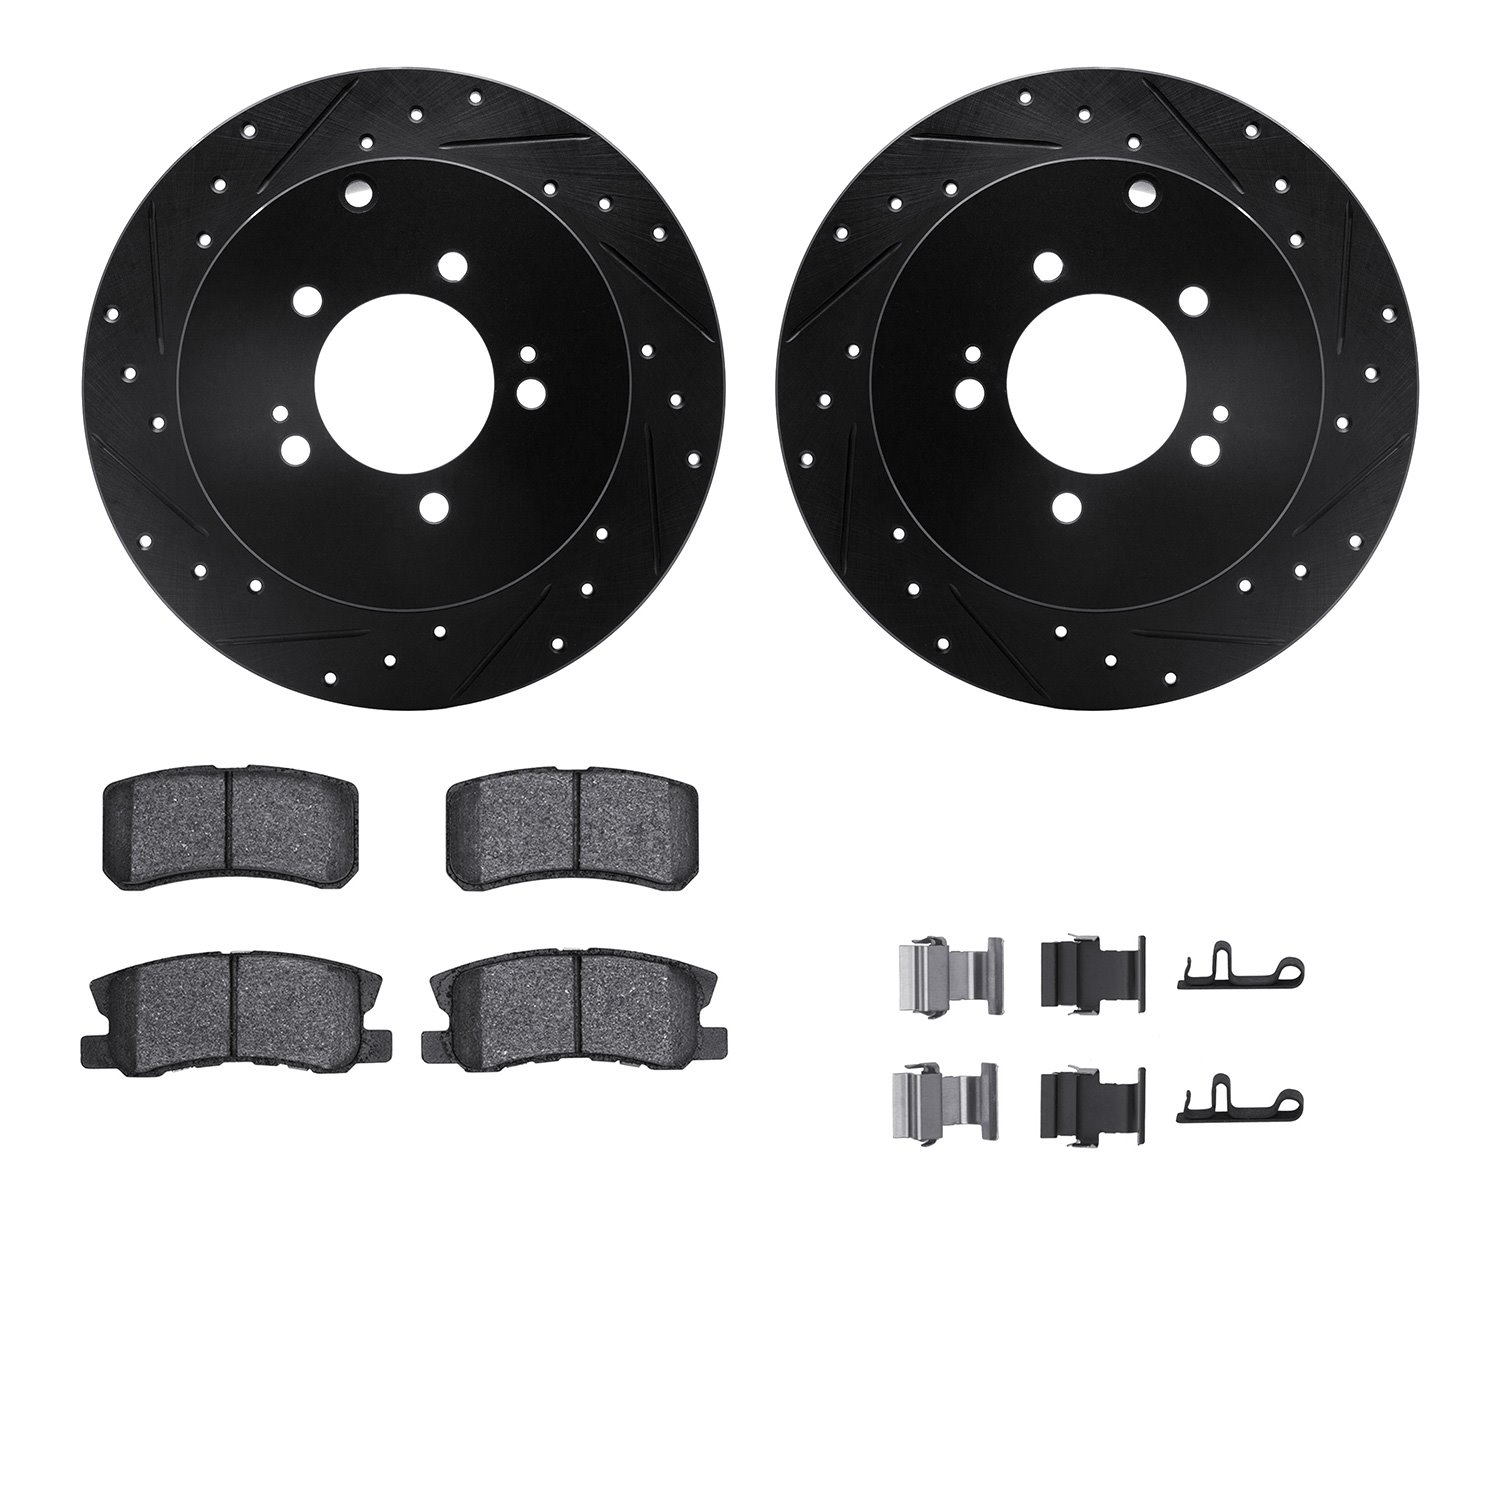 8312-72075 Drilled/Slotted Brake Rotors with 3000-Series Ceramic Brake Pads Kit & Hardware [Black], 2007-2015 Mitsubishi, Positi